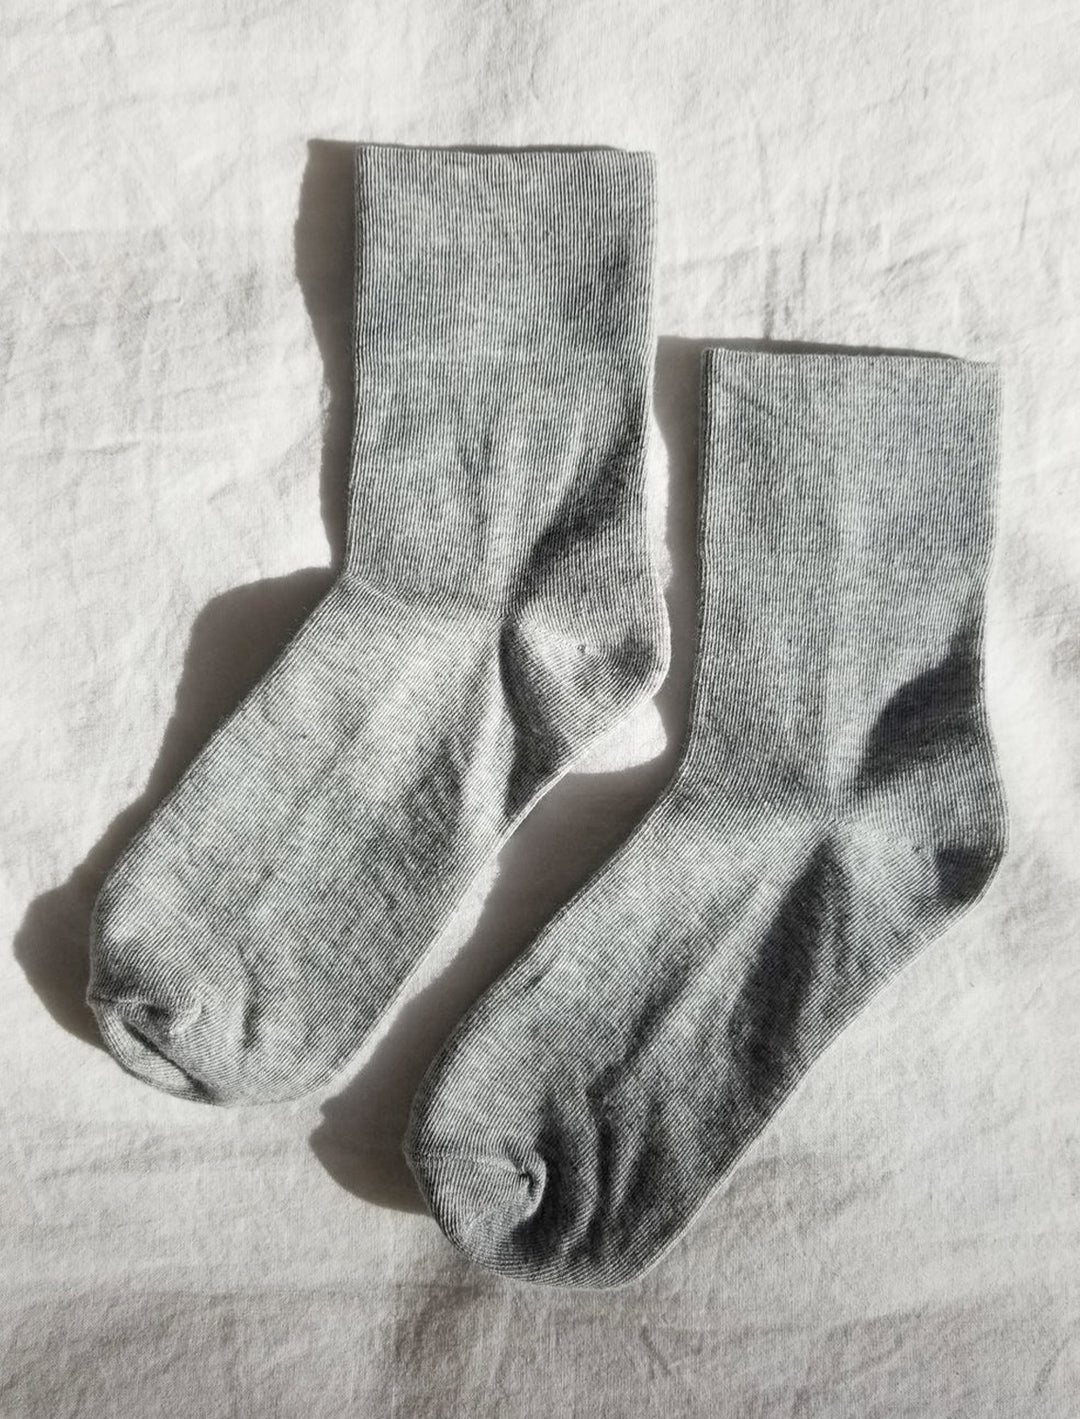 Laydown of Le Bon Shoppe's sneaker socks in heather grey.